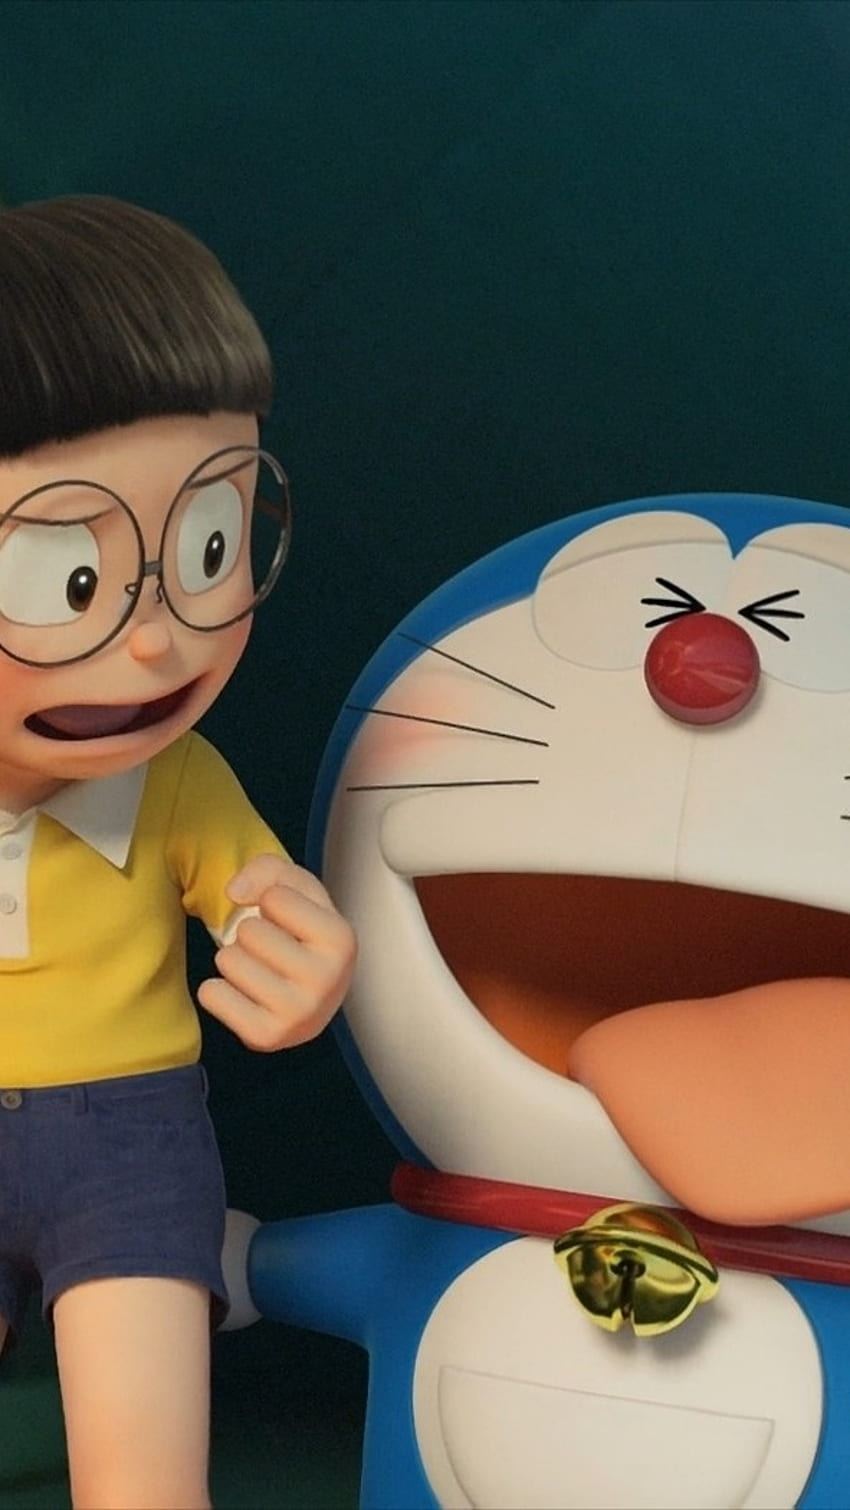 Doraemon Story of Seasons: Được lấy cảm hứng từ trò chơi kinh điển Story of Seasons, câu chuyện kinh điển của Doraemon với thế giới quản lý nông trại sẽ là một trải nghiệm thú vị và đáng nhớ cho tất cả fan hâm mộ của Doraemon.